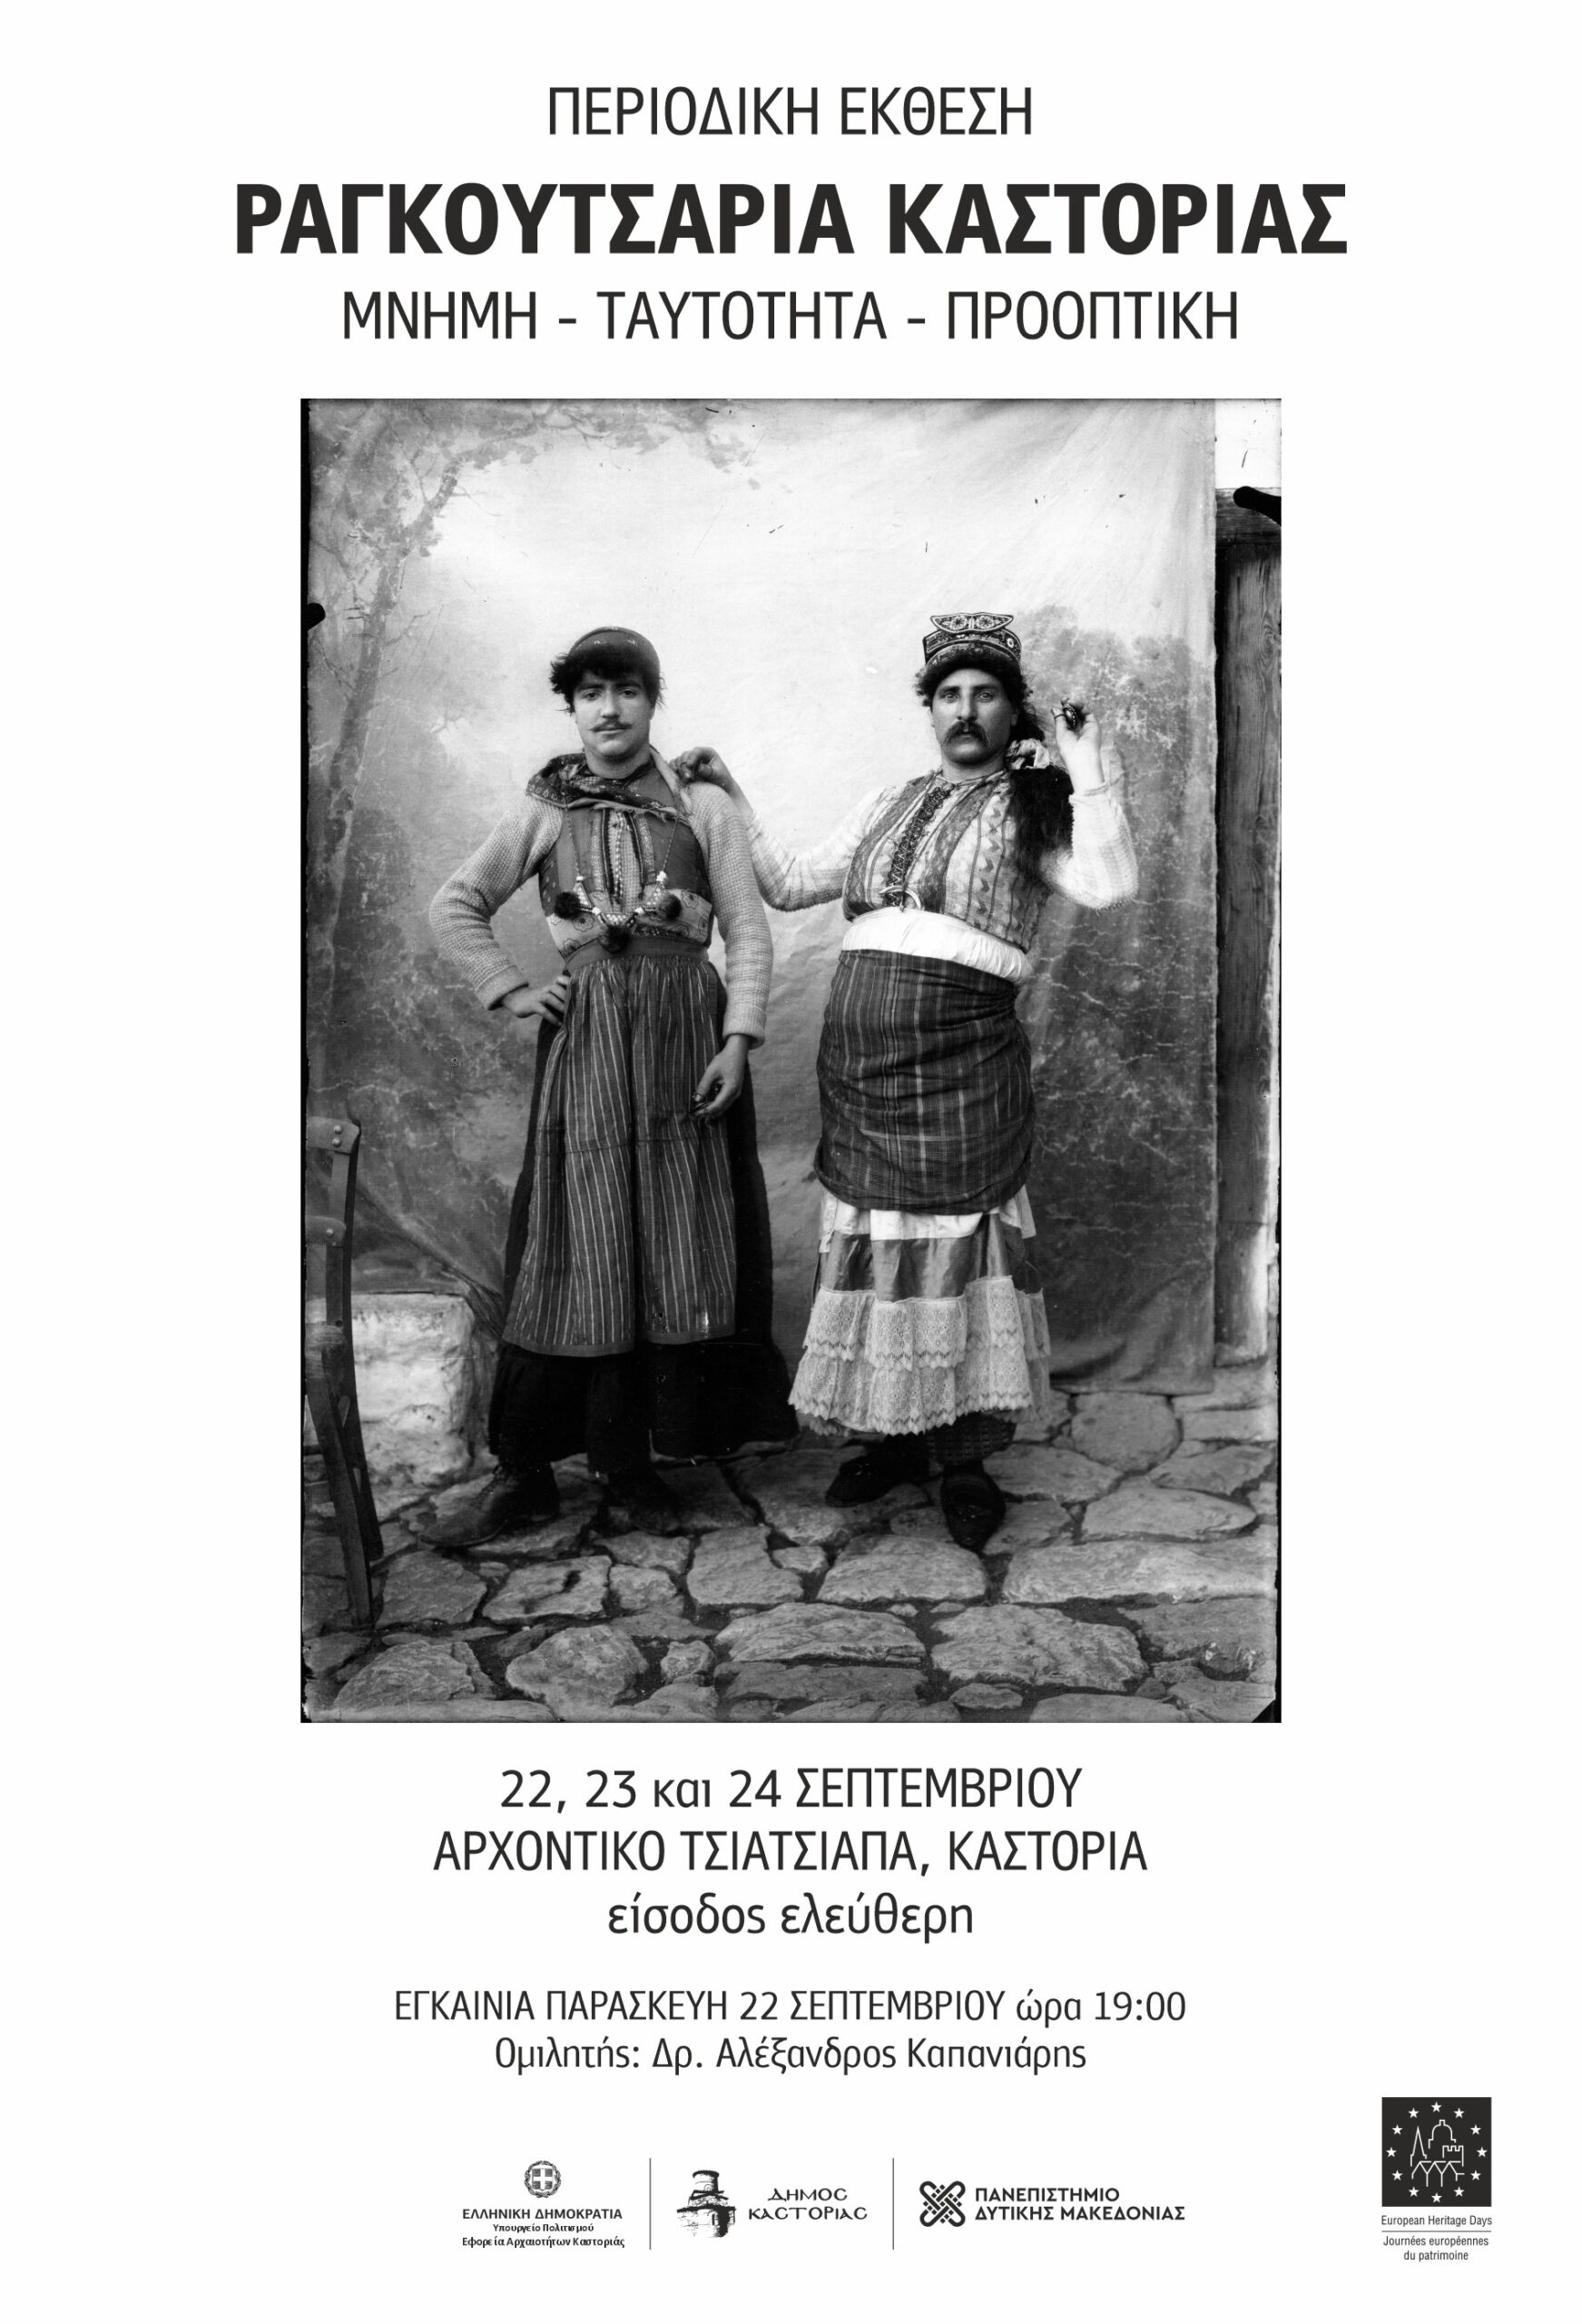 Καστοριά: Έκθεση “Μνήμη – Ταυτότητα- προοπτική”